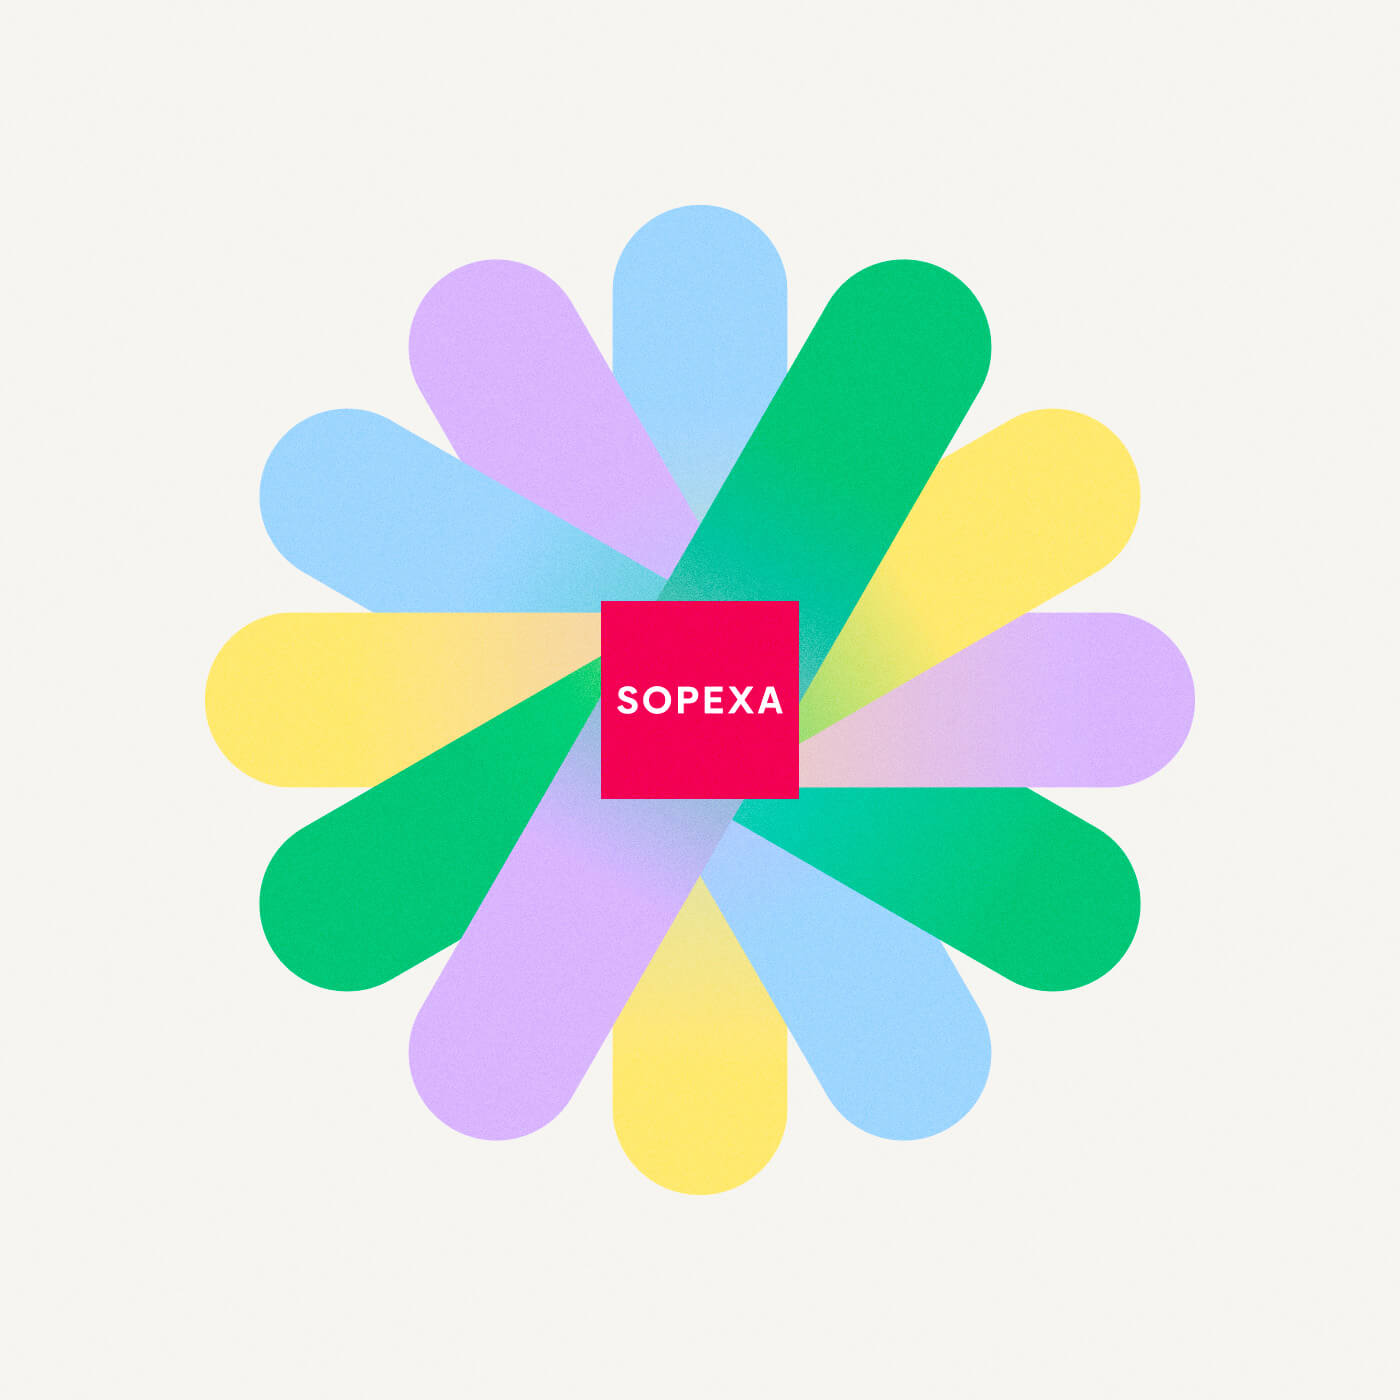 Roue des couleurs de la nouvelle identite de Sopexa